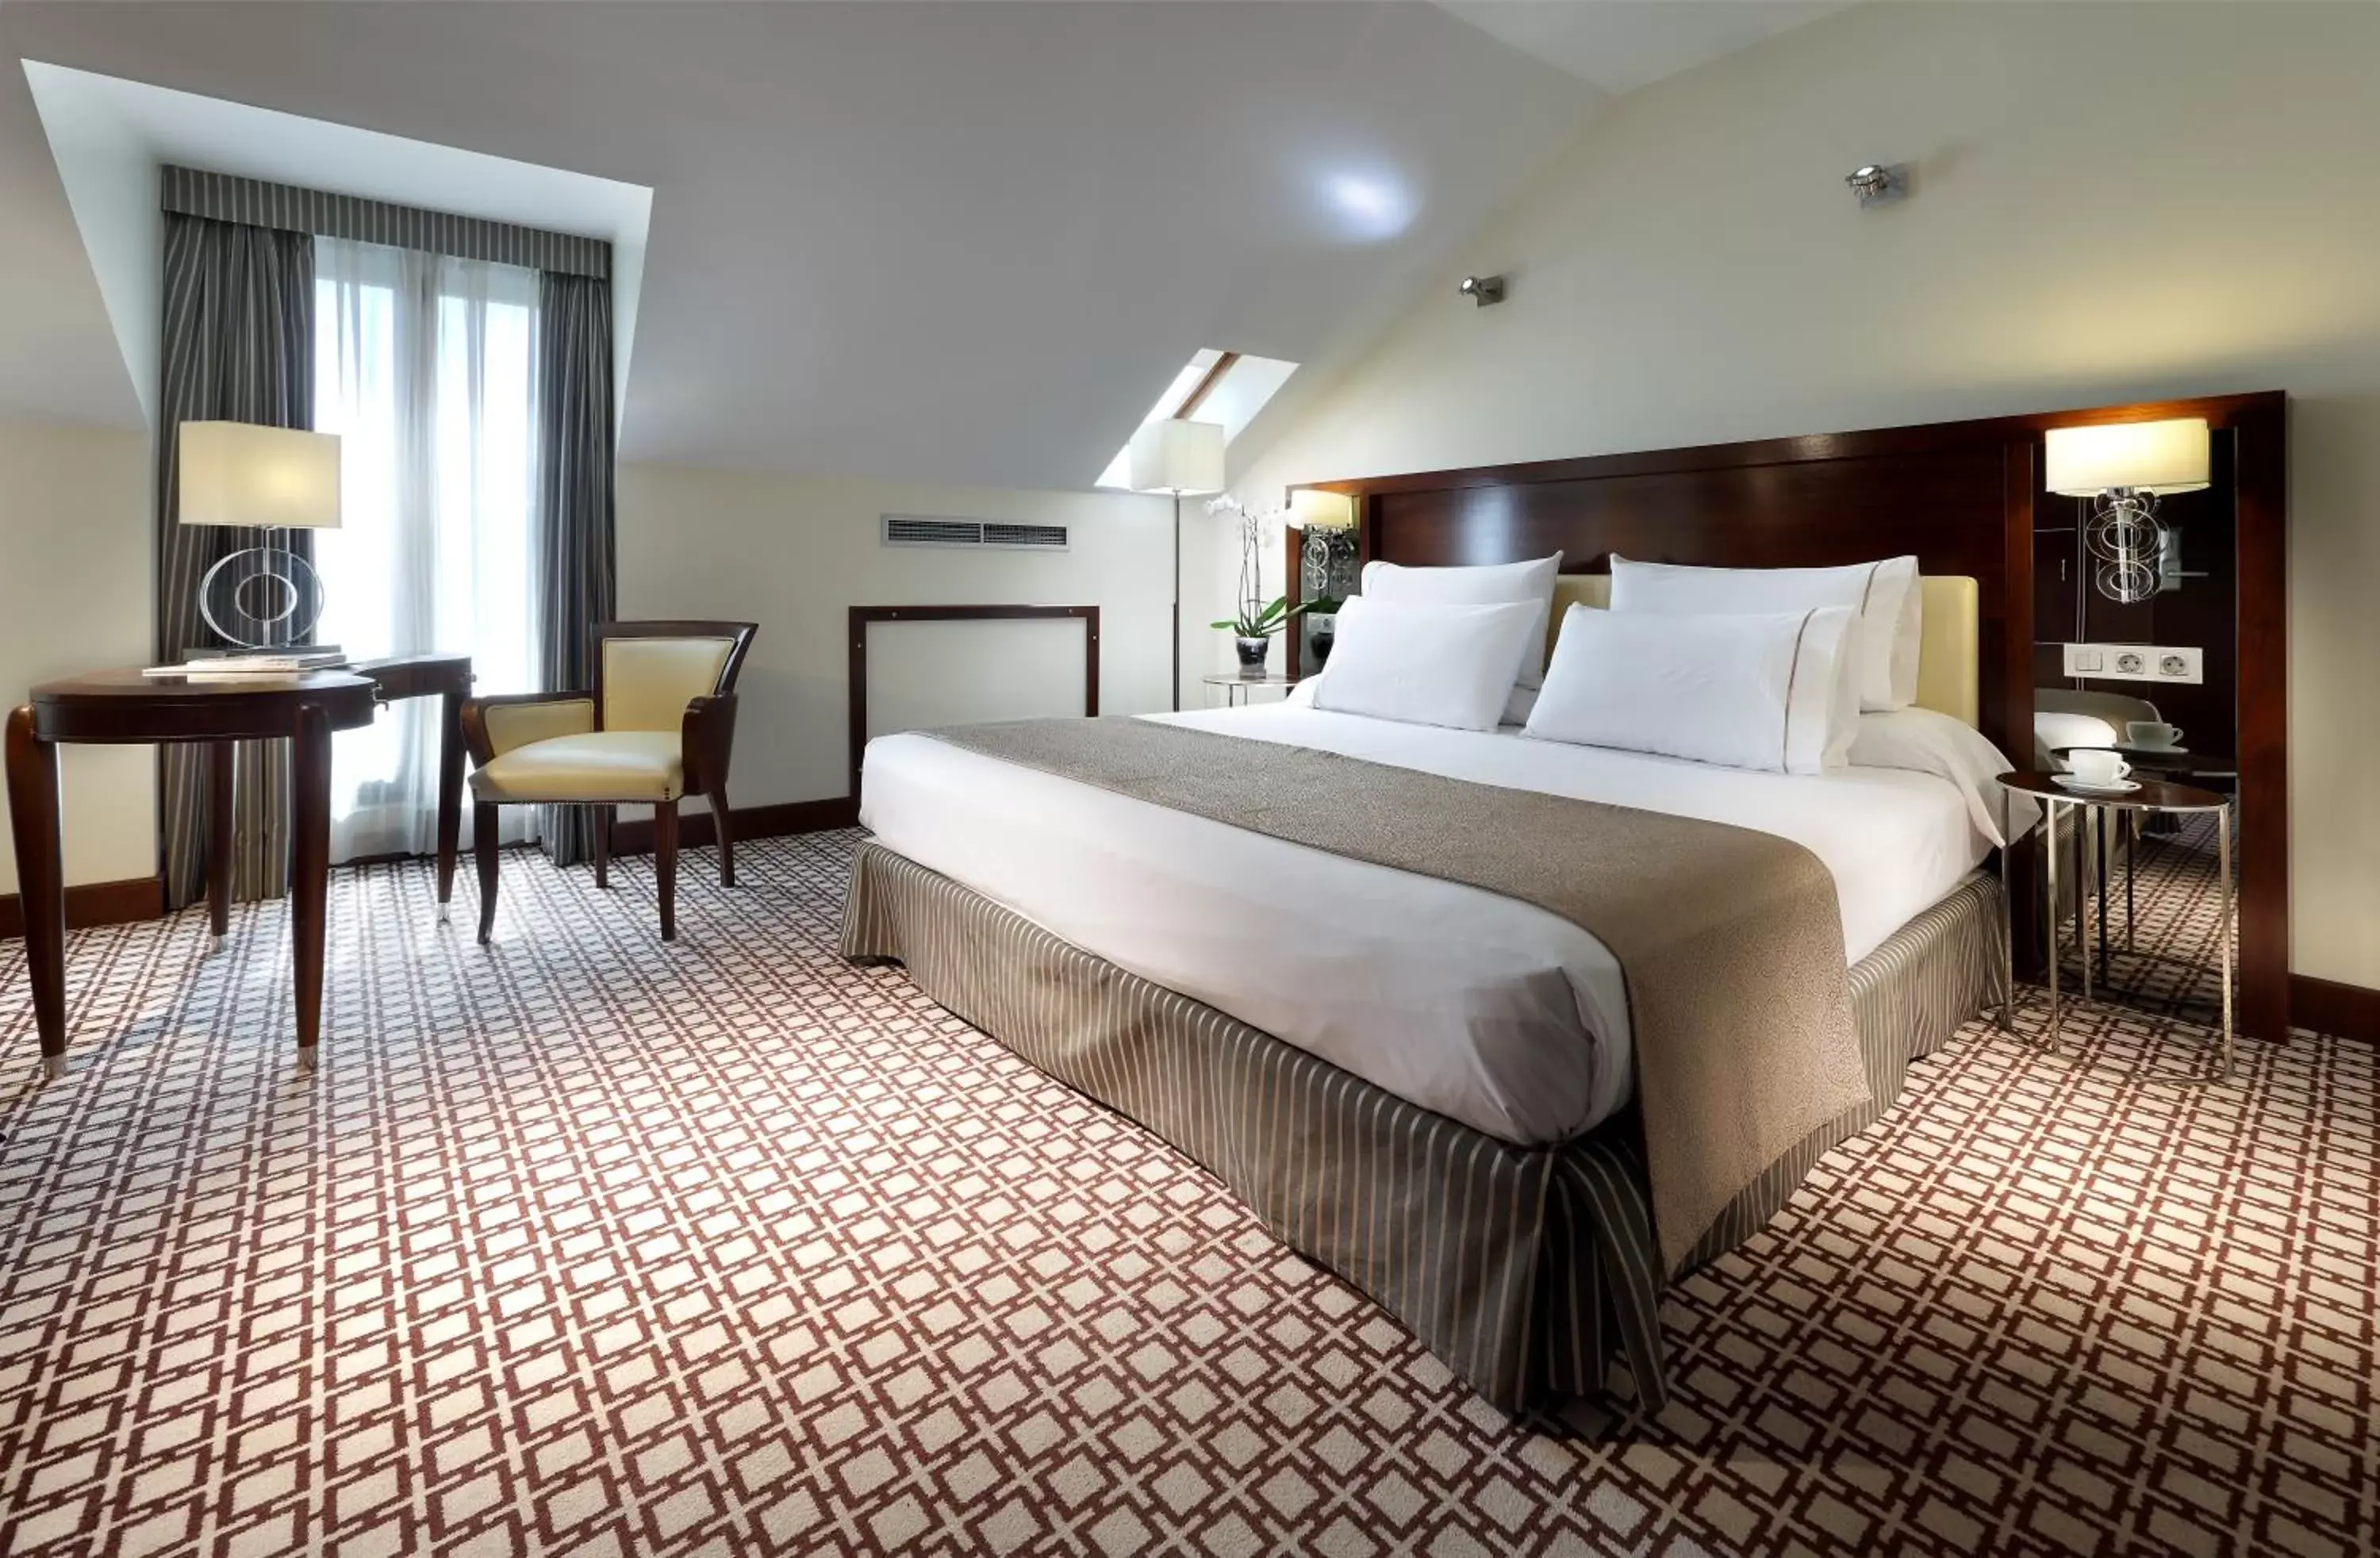 Bed, Room Photo in Eurostars Gran Via